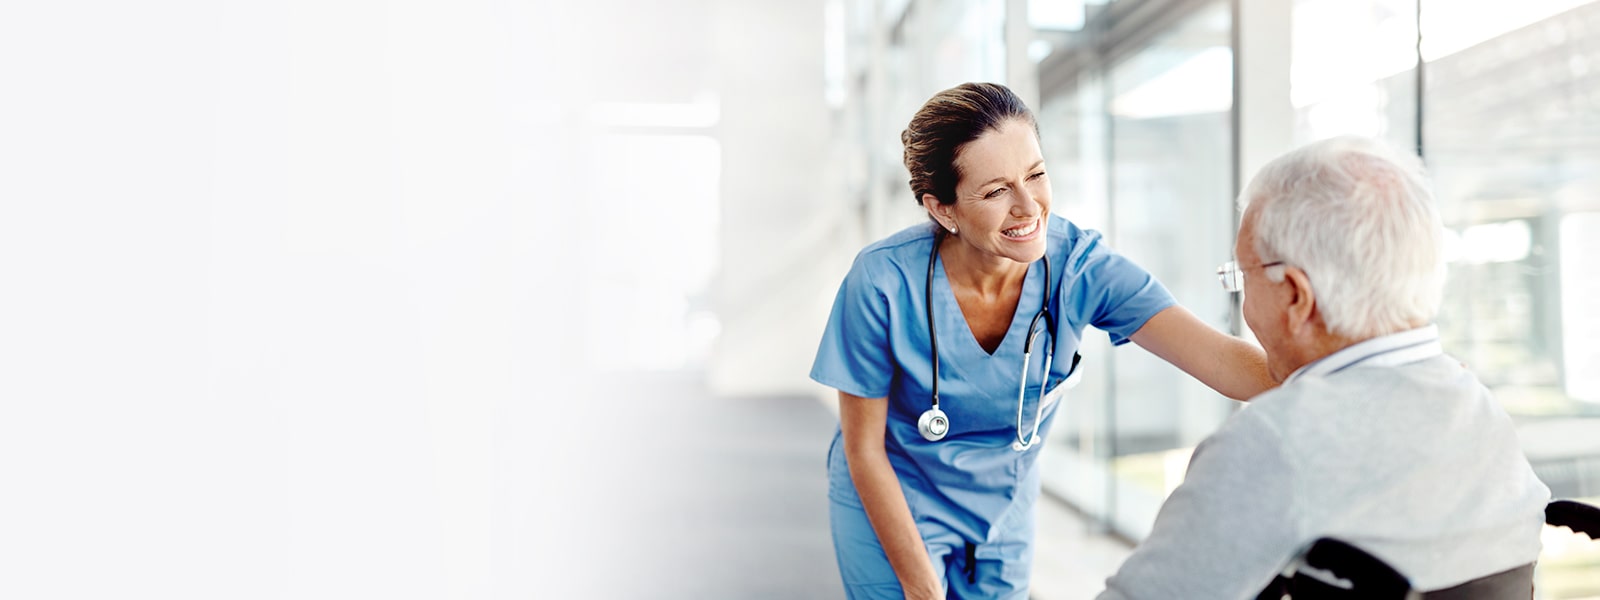 Imagen de una enfermera sonriendo a un paciente.